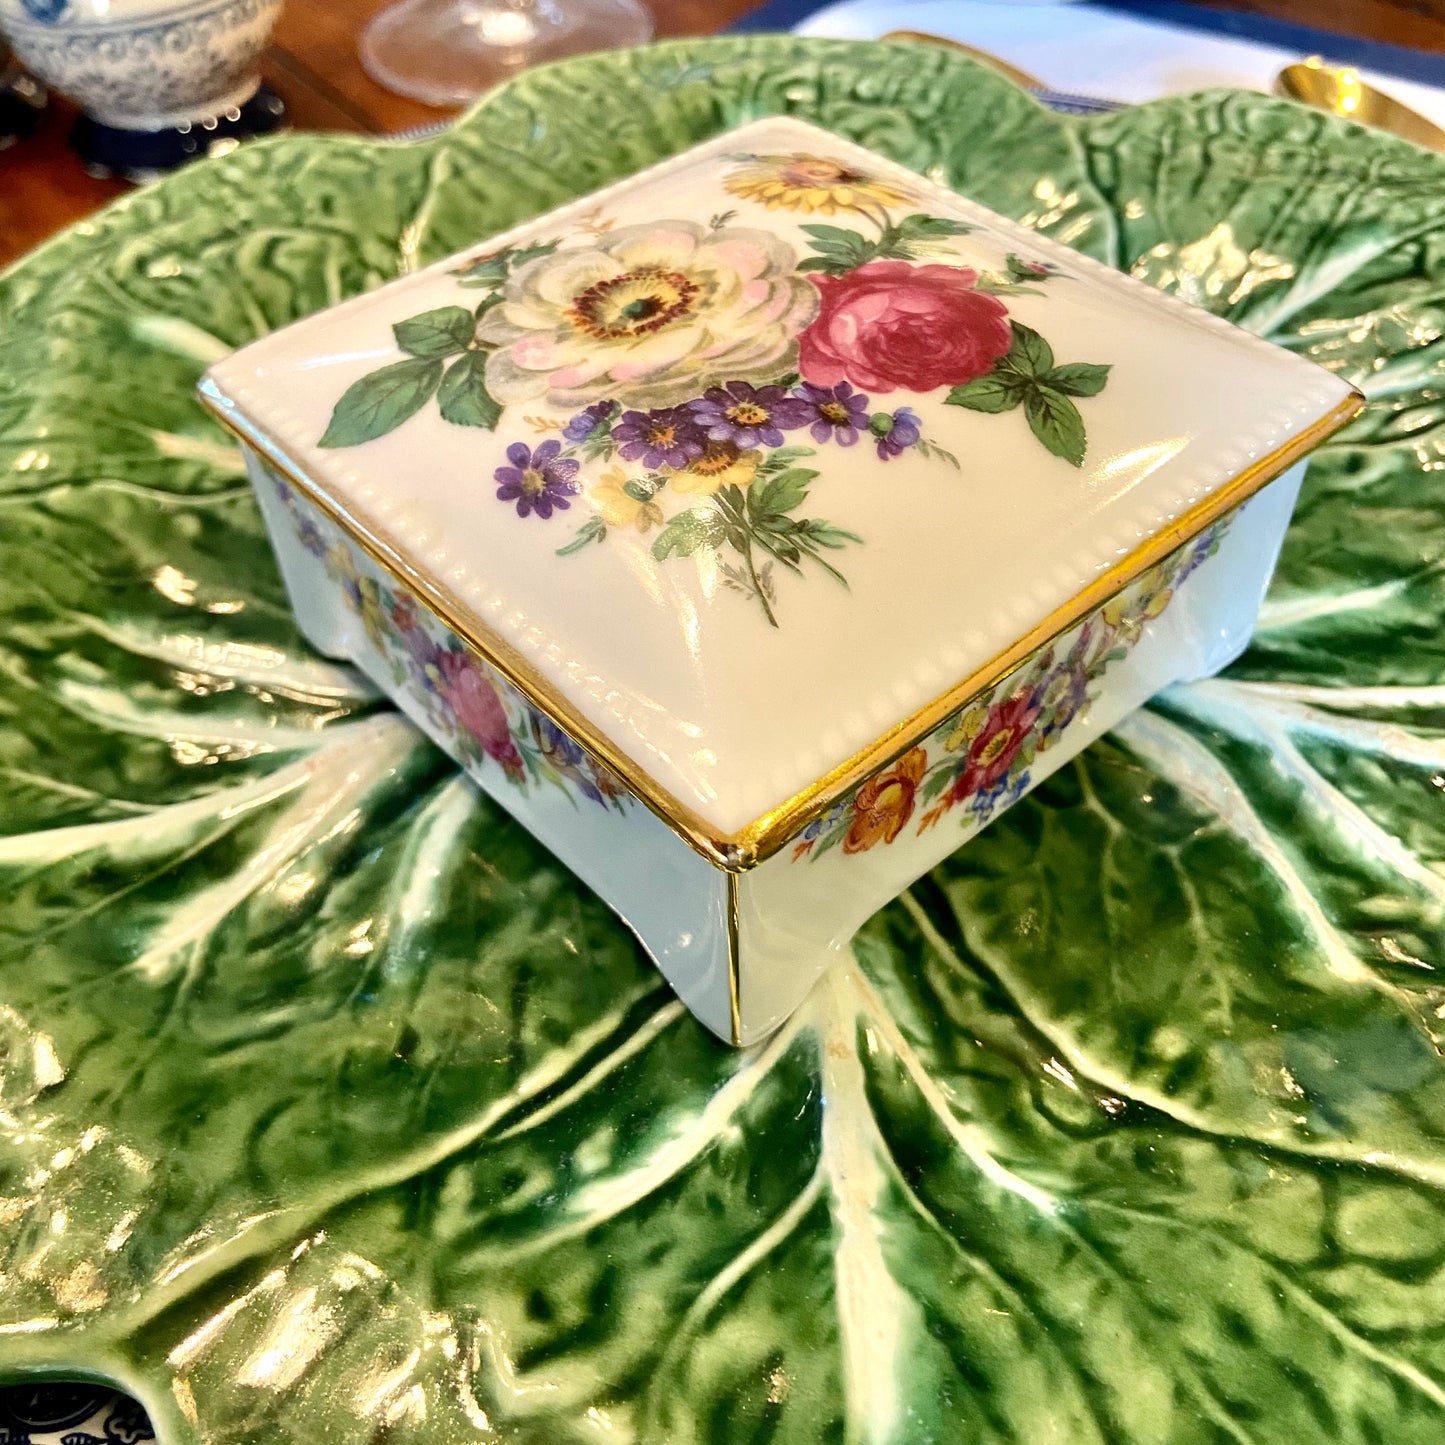 Delightful designer vintage floral porcelain trinket box with lid